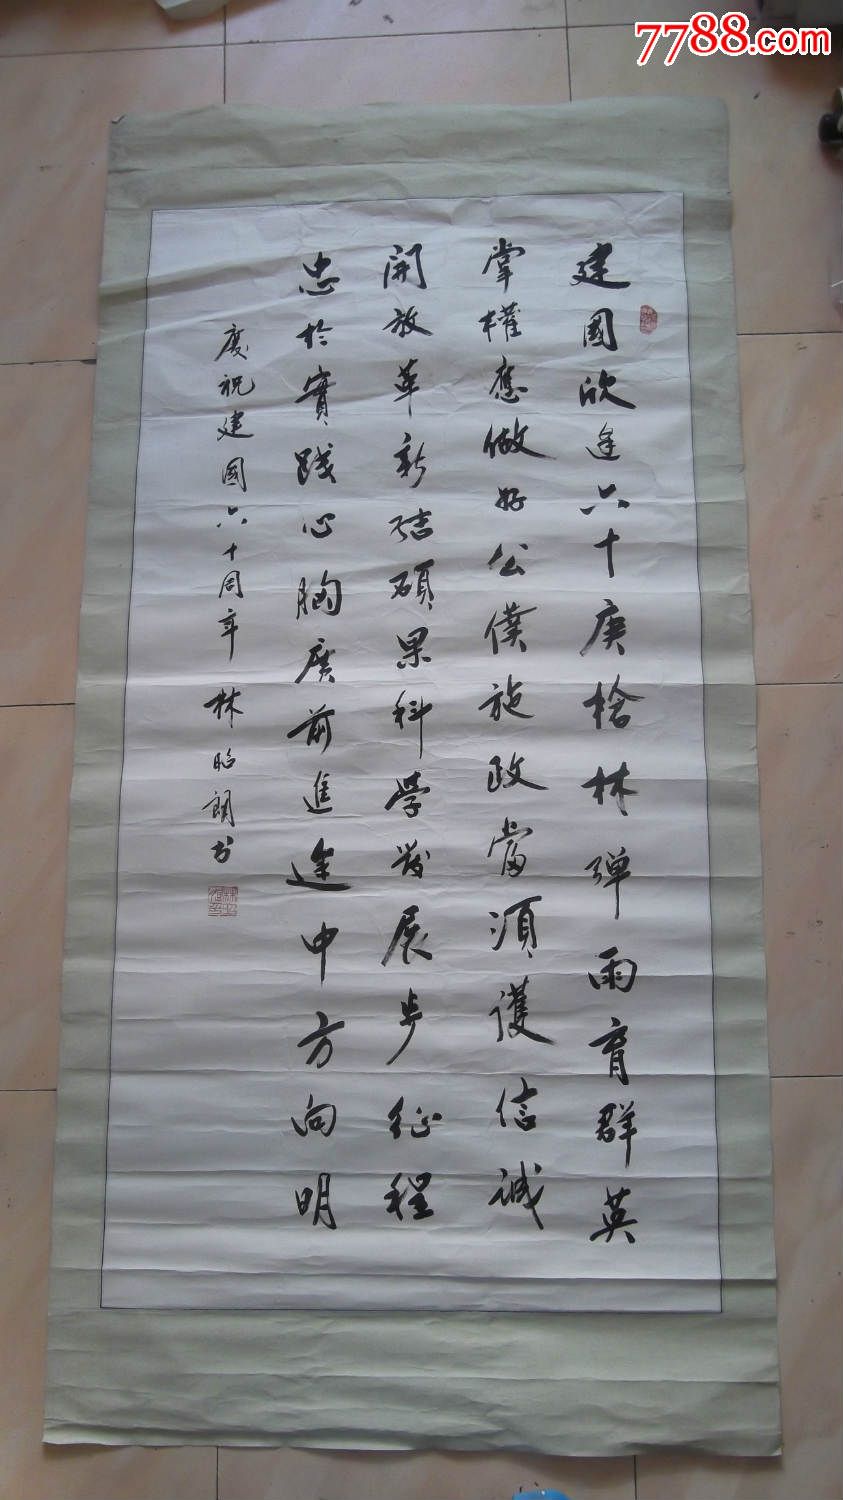 名人字画,林昭朗书法,尺寸大,字写的多,好,有收藏价值